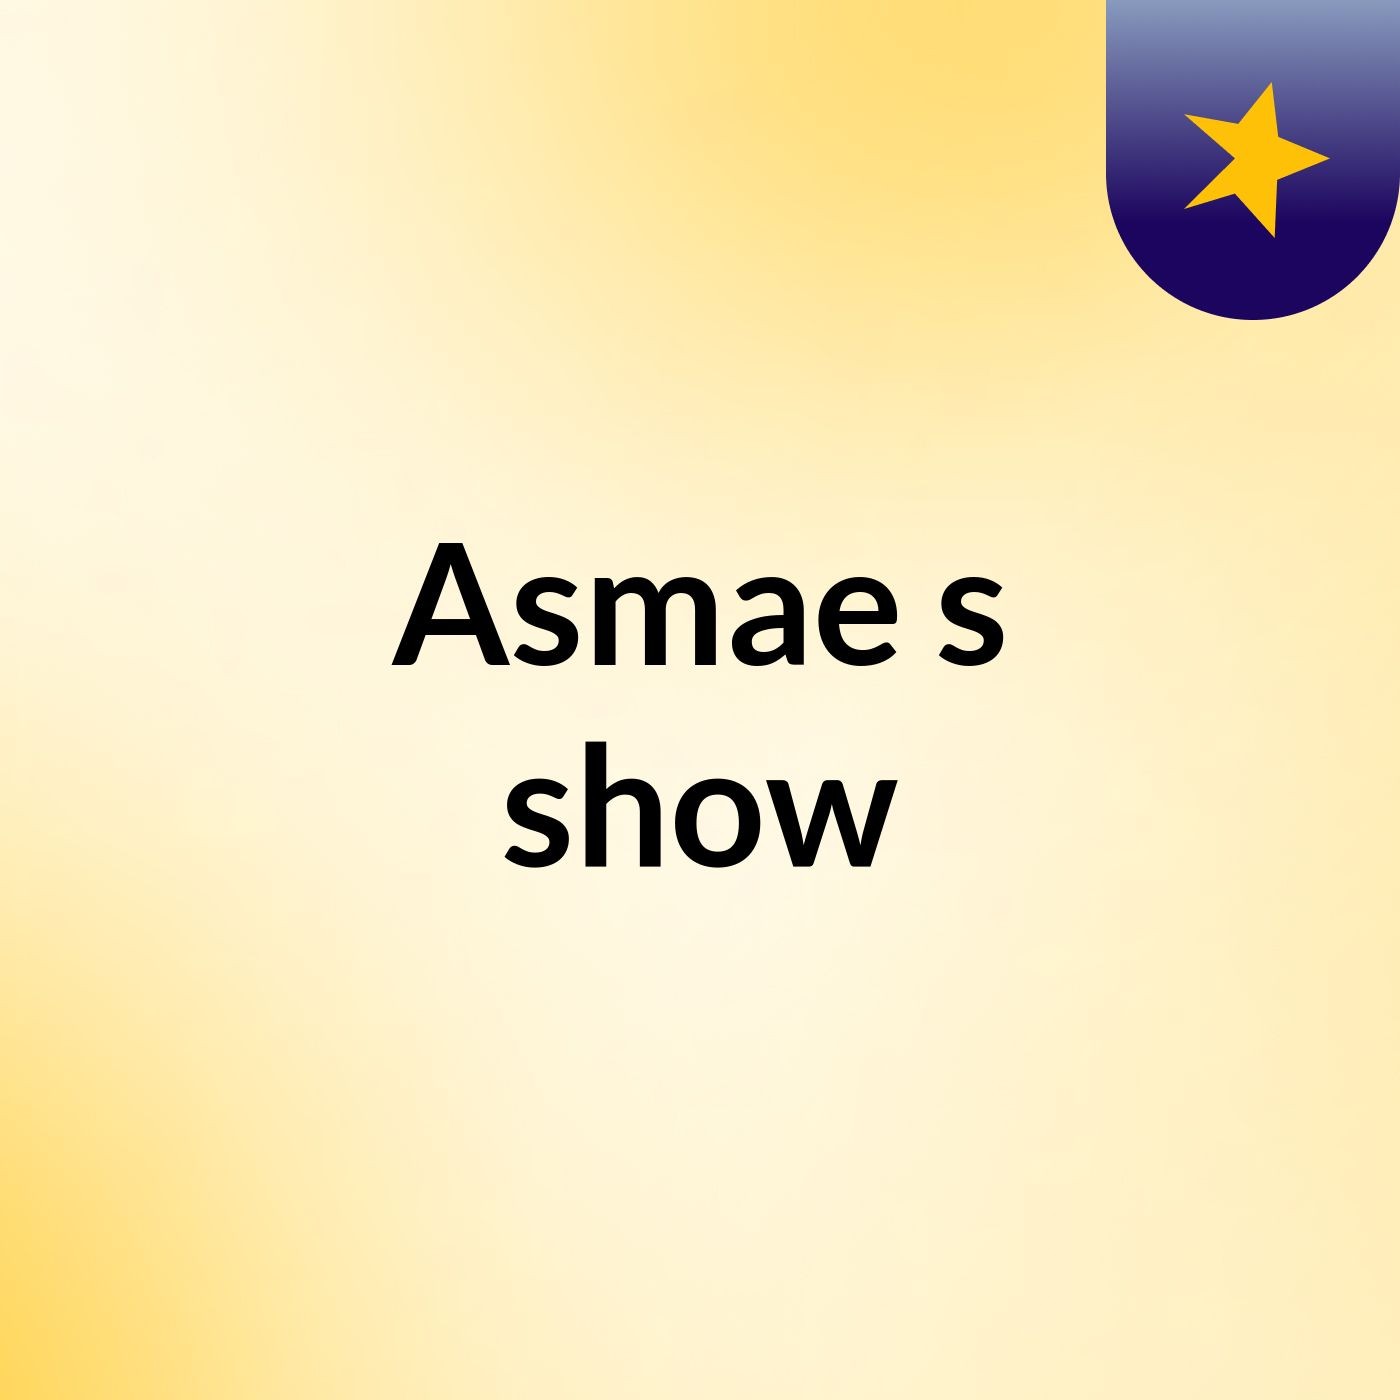 Asmae's show